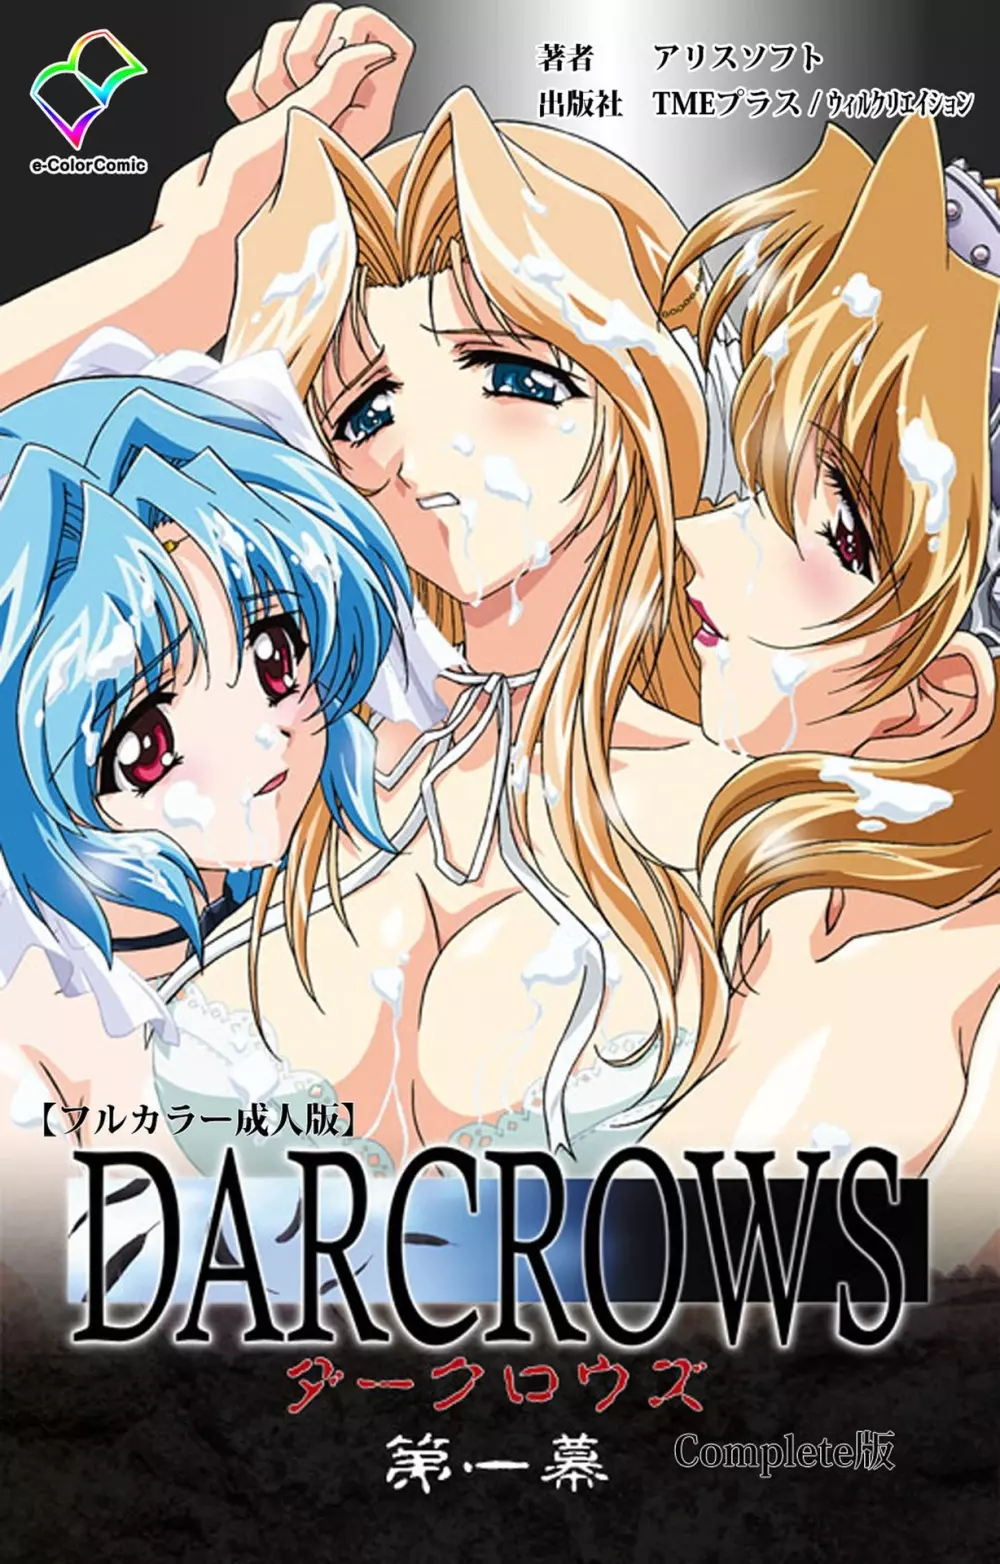 【フルカラー成人版】 DARCROWS 第一幕 Complete版